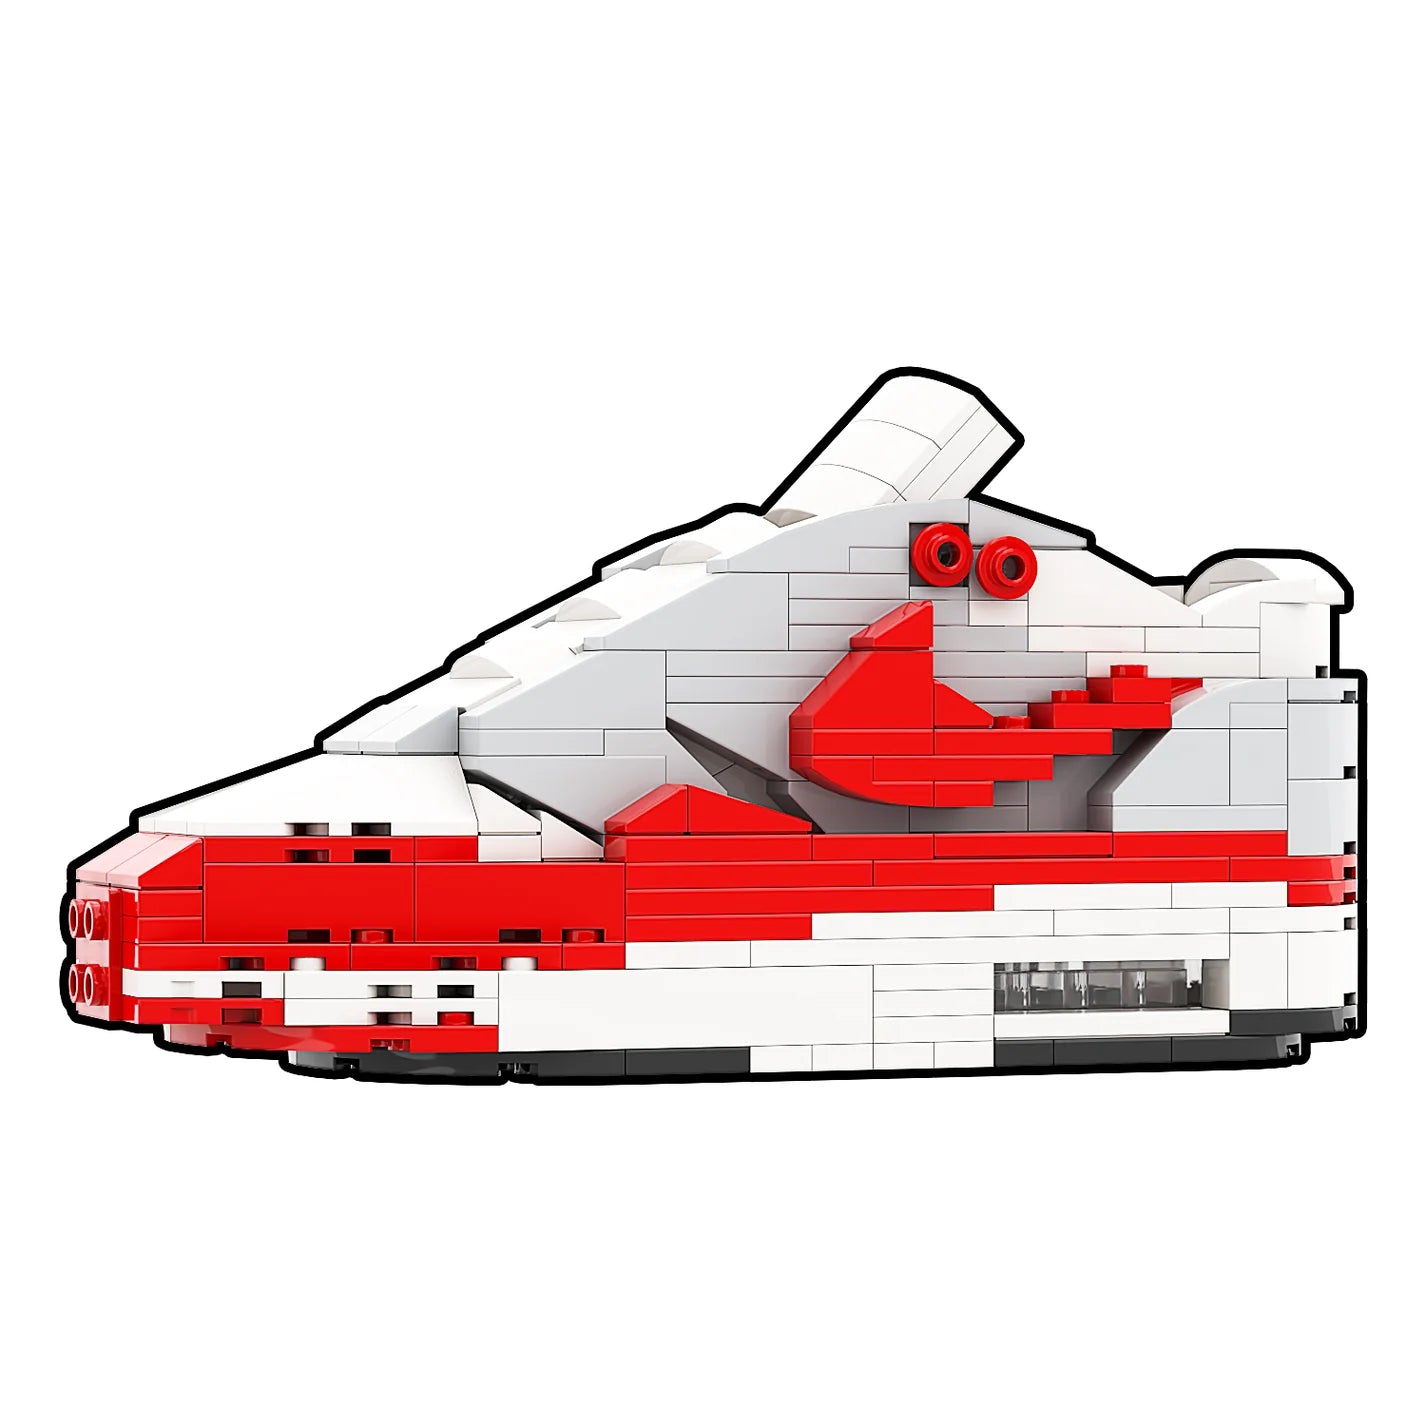 Sneaker Bricks Air Max 1 Red White OG